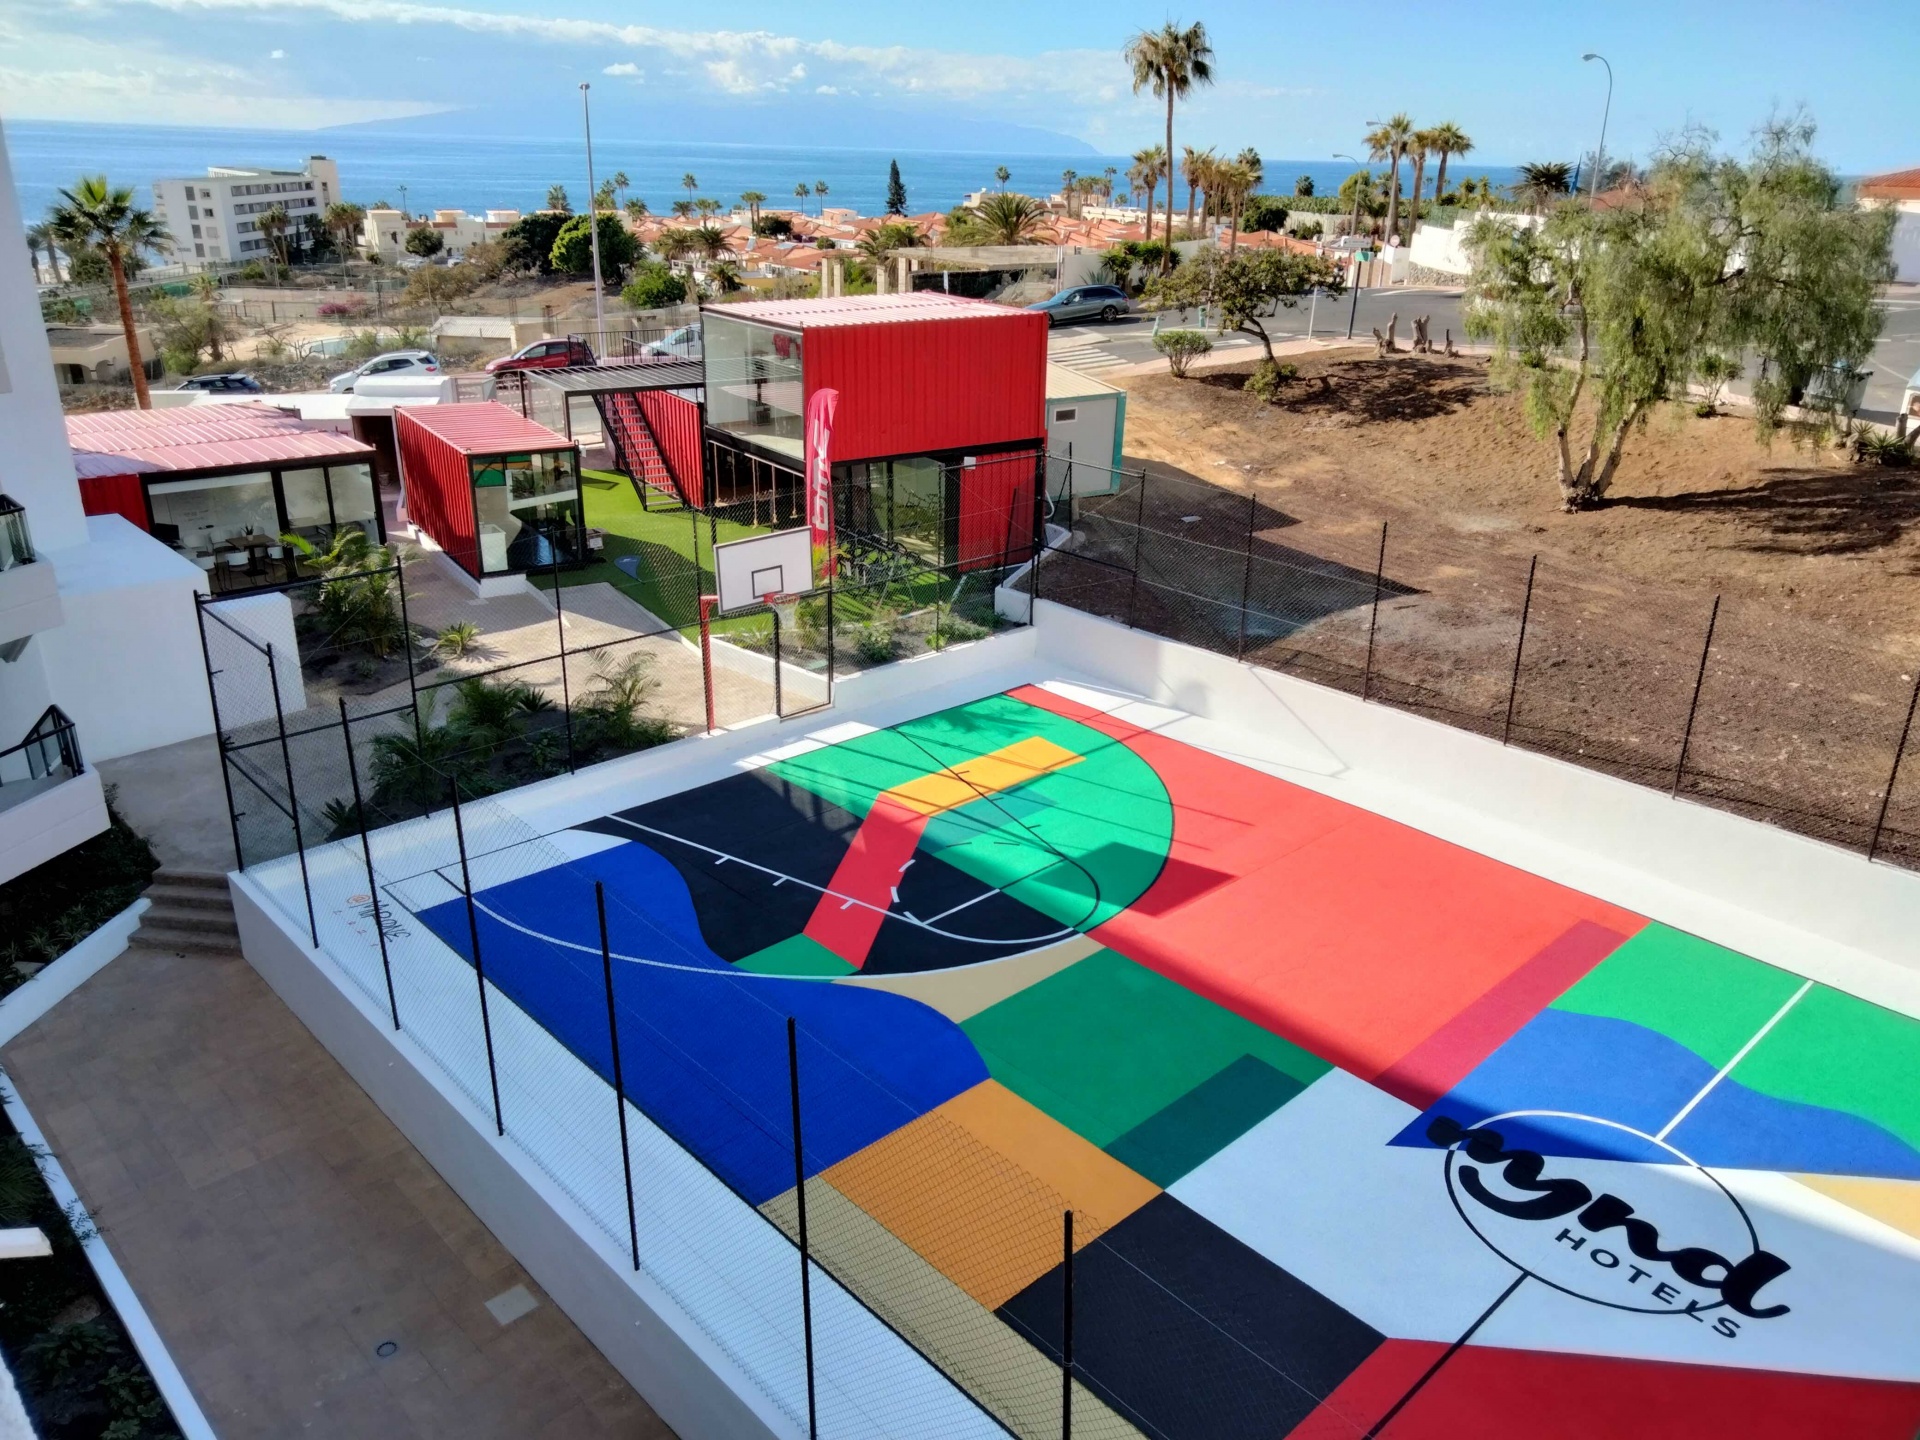 El nuevo hotel MYND Adeje apuesta por el arte urbano con una cancha de baloncesto diseñada por Iker Muro